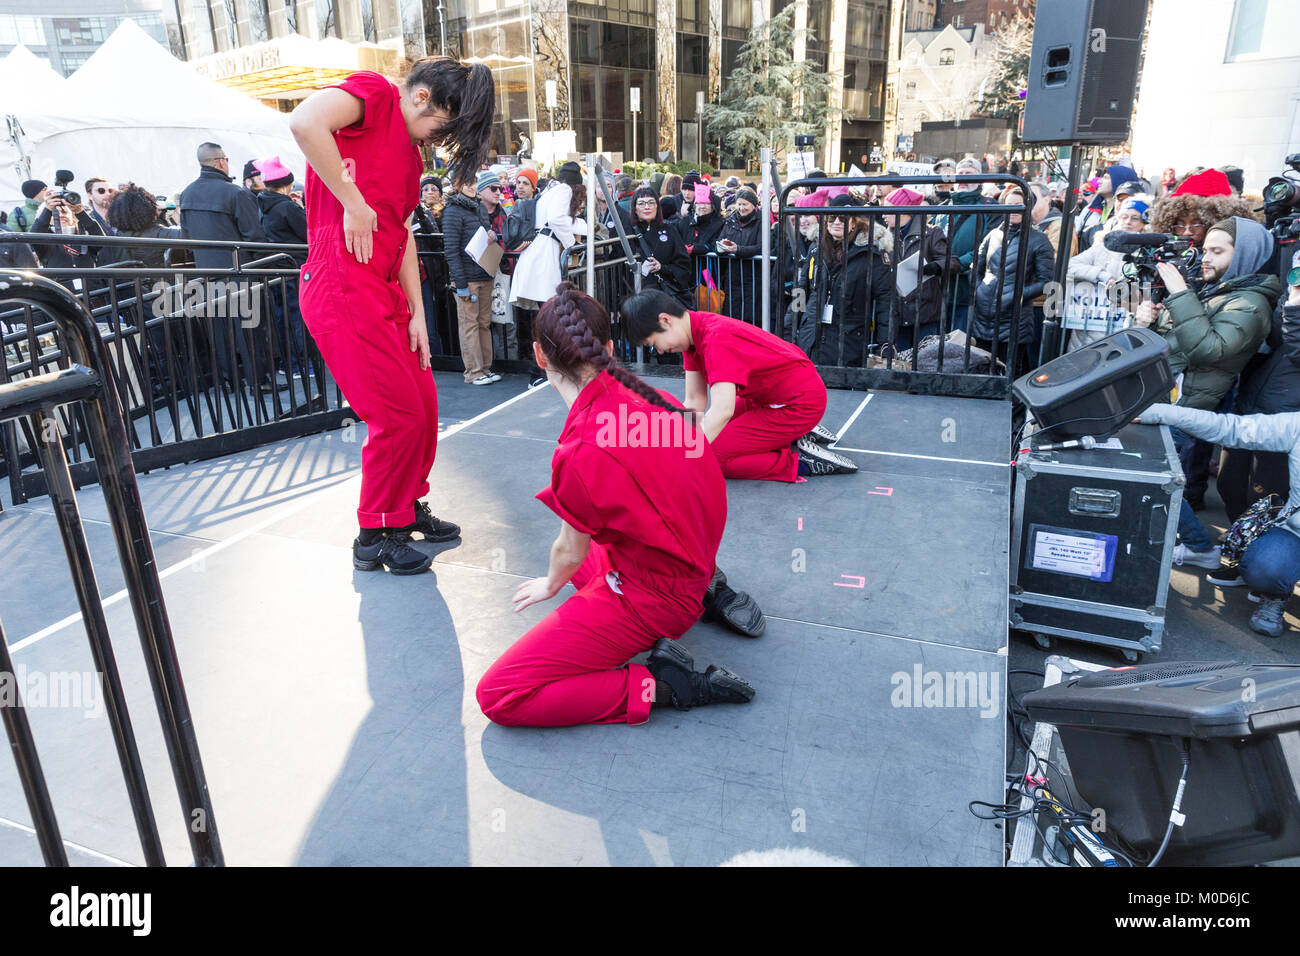 New York, NY - 20. Januar 2018: Tänzer aus erschweren die Welt Kollektiv an Frauen € ™ s März in New York am Central Park West Quelle: Lev radin/Alamy leben Nachrichten Stockfoto